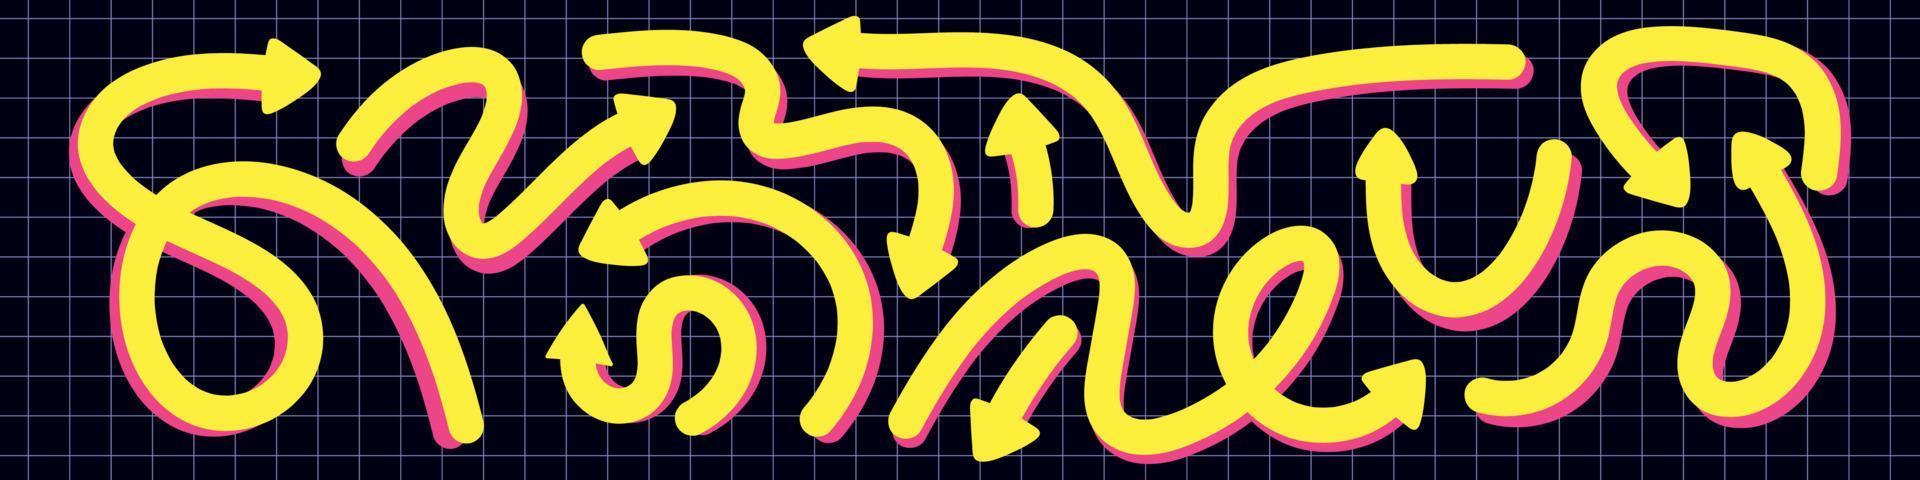 dynamische Pfeile Doodle-Set. verschiedene verspielte gelbe linienelemente mit pfeildrehung. skurrile Designrichtung. flache vektorisolierte illustration vektor